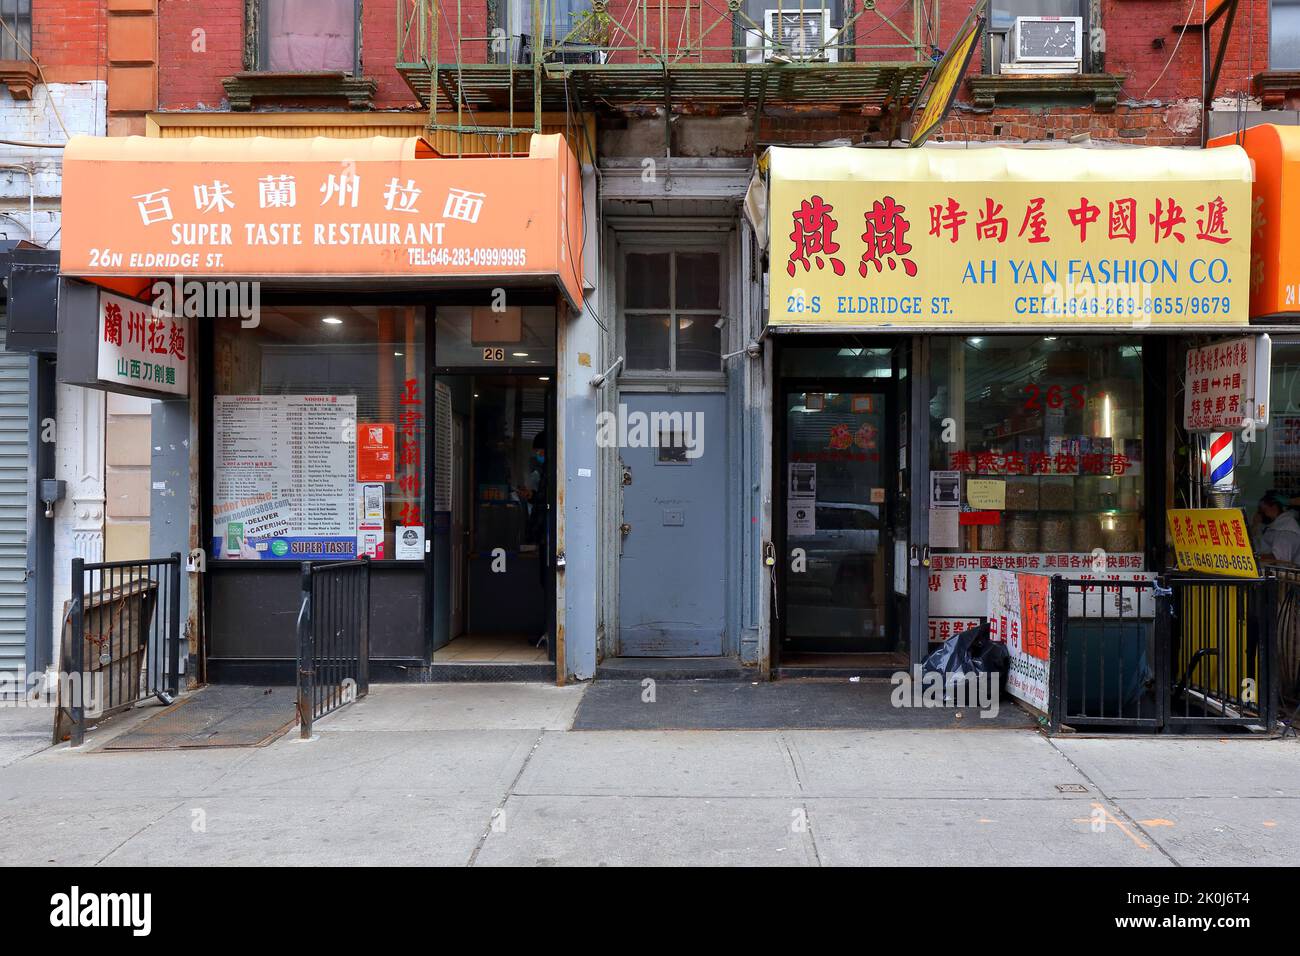 Super Taste Restaurant 百味蘭州拉面, 26 Eldridge St, New York, NYC foto di un ristorante di noodle Lanzhou tirato a mano a Manhattan Chinatown. Foto Stock